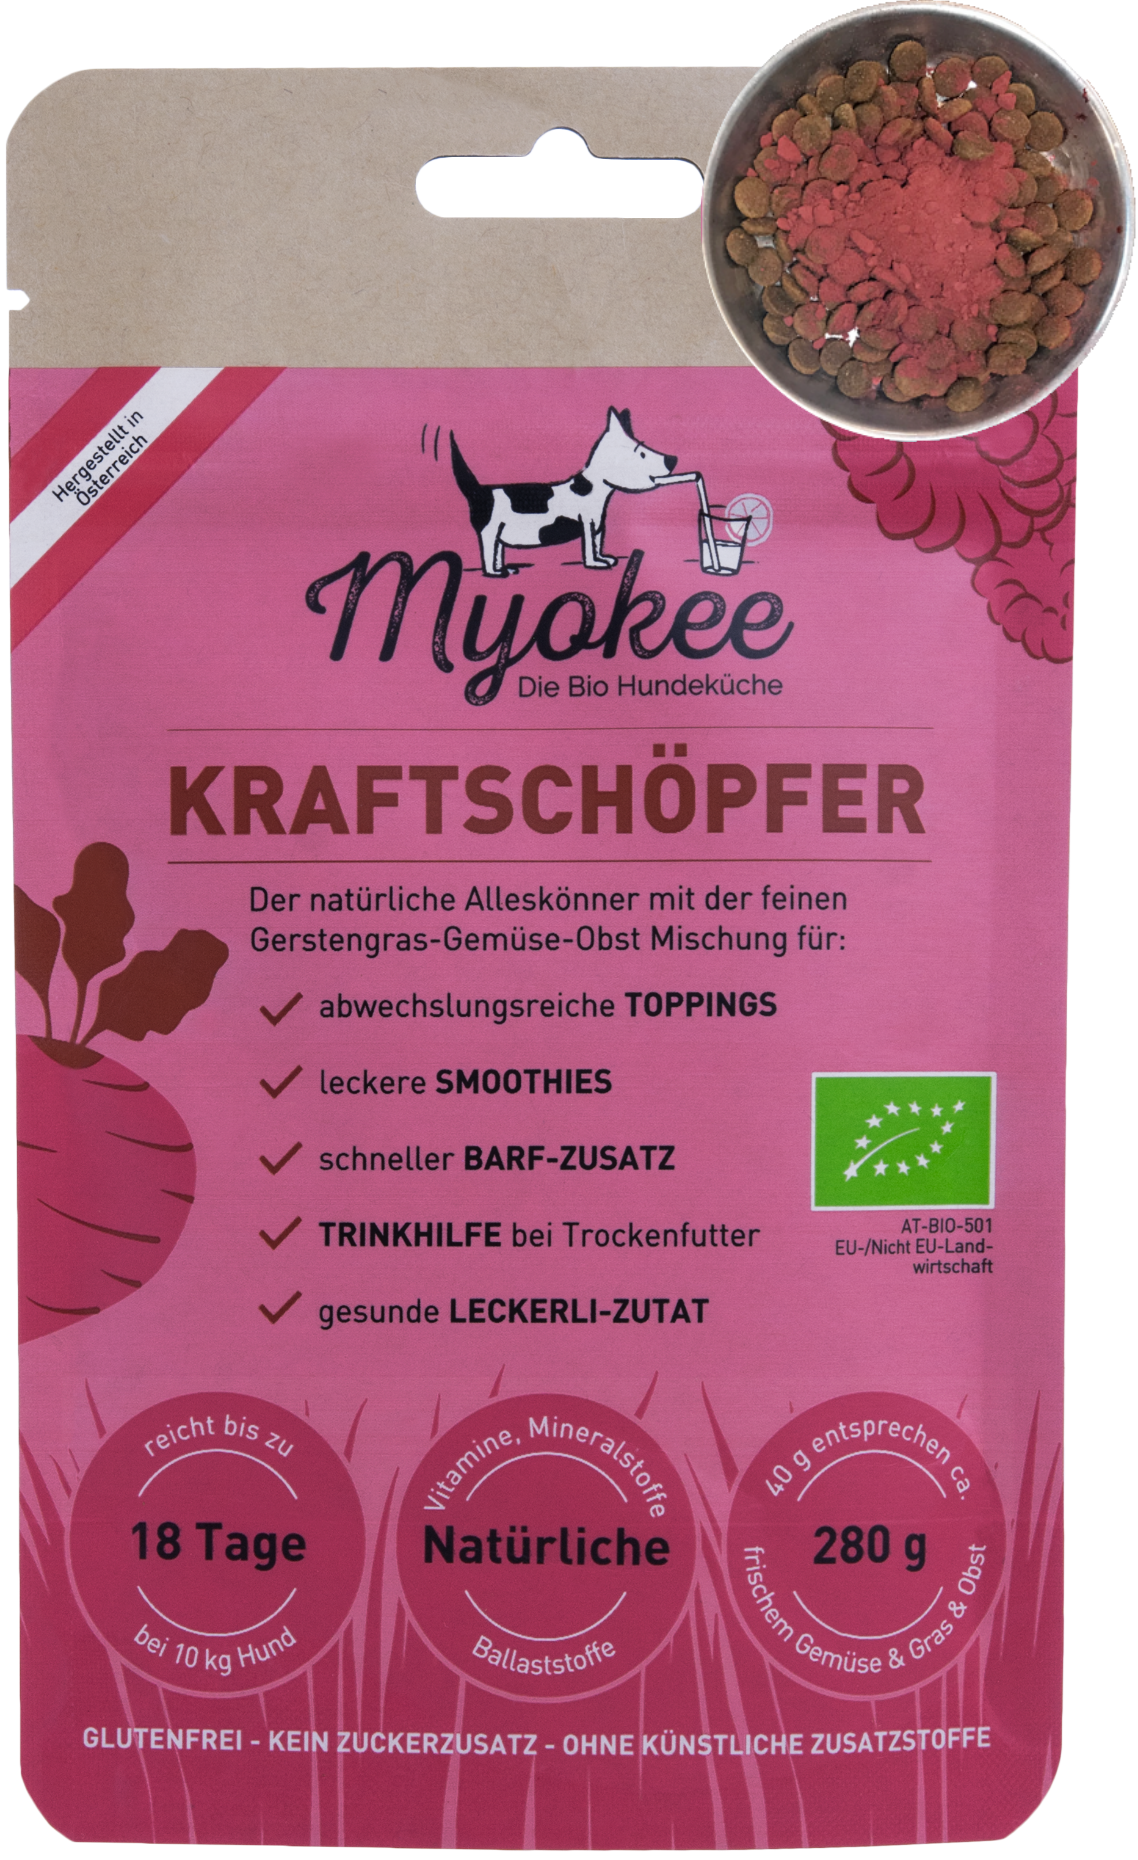 MYOKEE - Die Bio Hundeküche Produkt-Beispiele KRAFTSCHÖPFER - eine himmlische Mischung aus rote Beete, Himbeeren, Hagebutte, Gerstengras, Kürbis